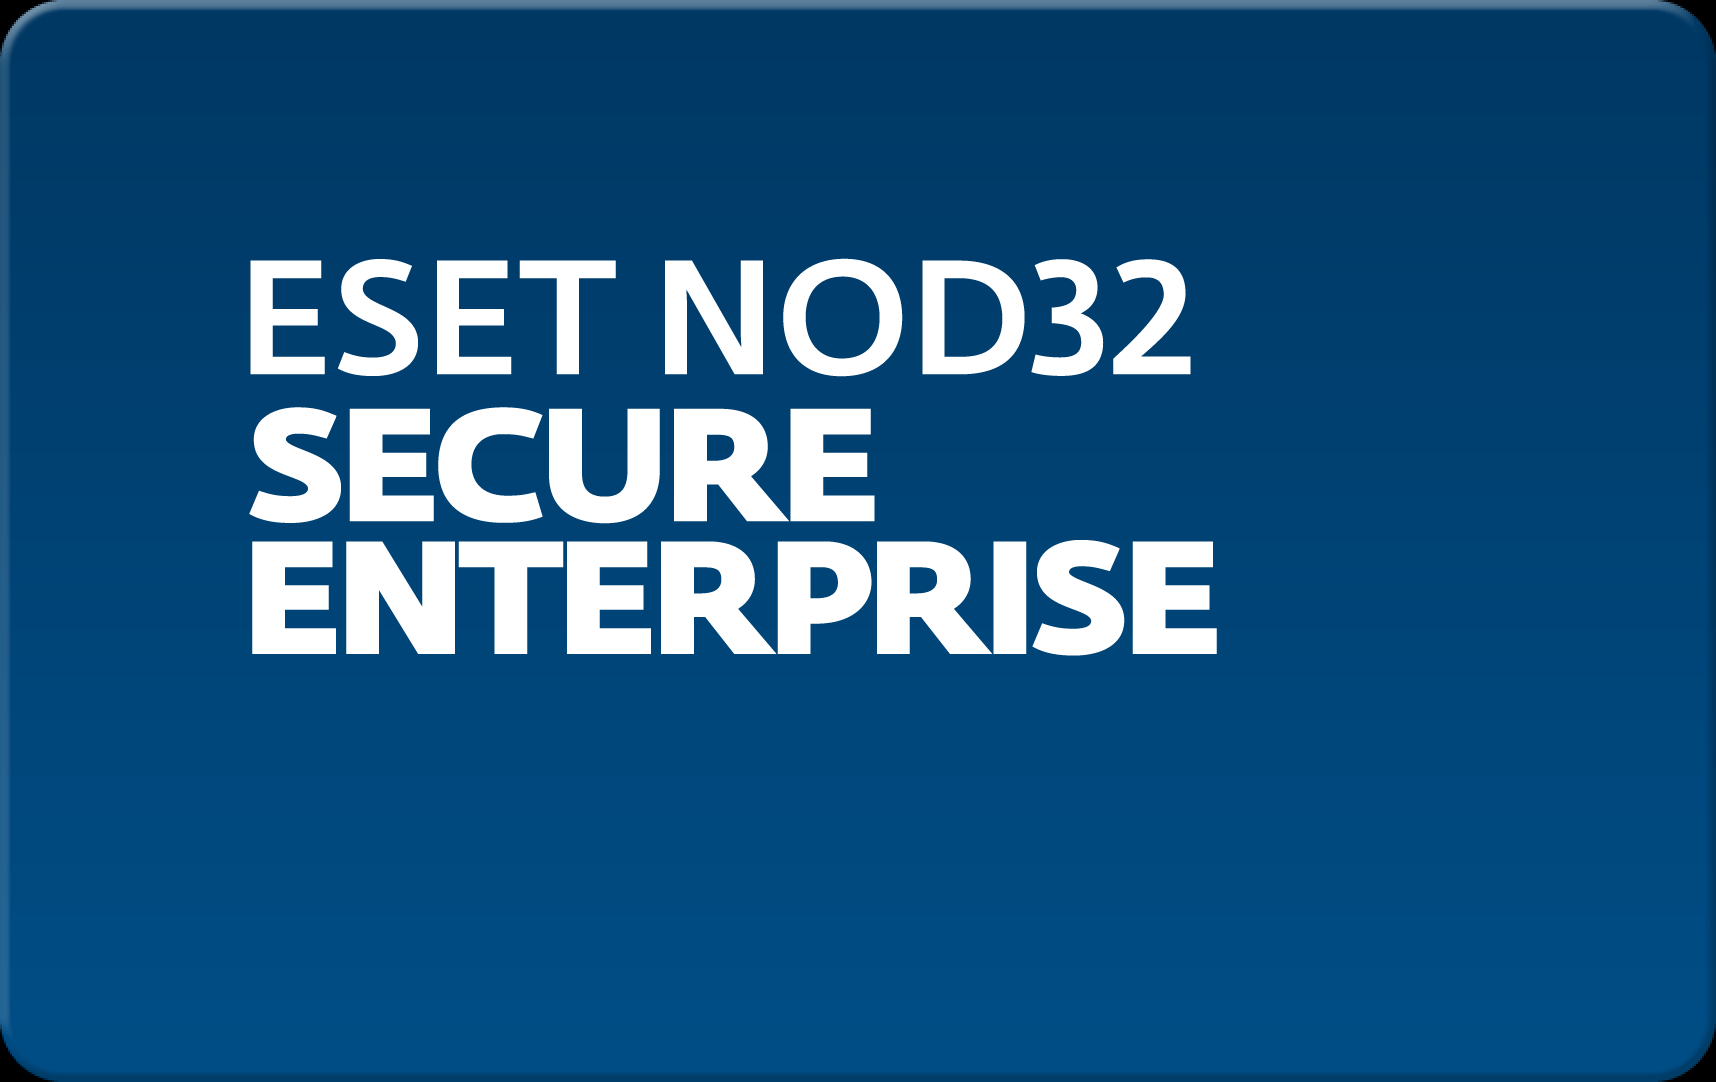        Eset NOD32 Secure Enterprise  134 